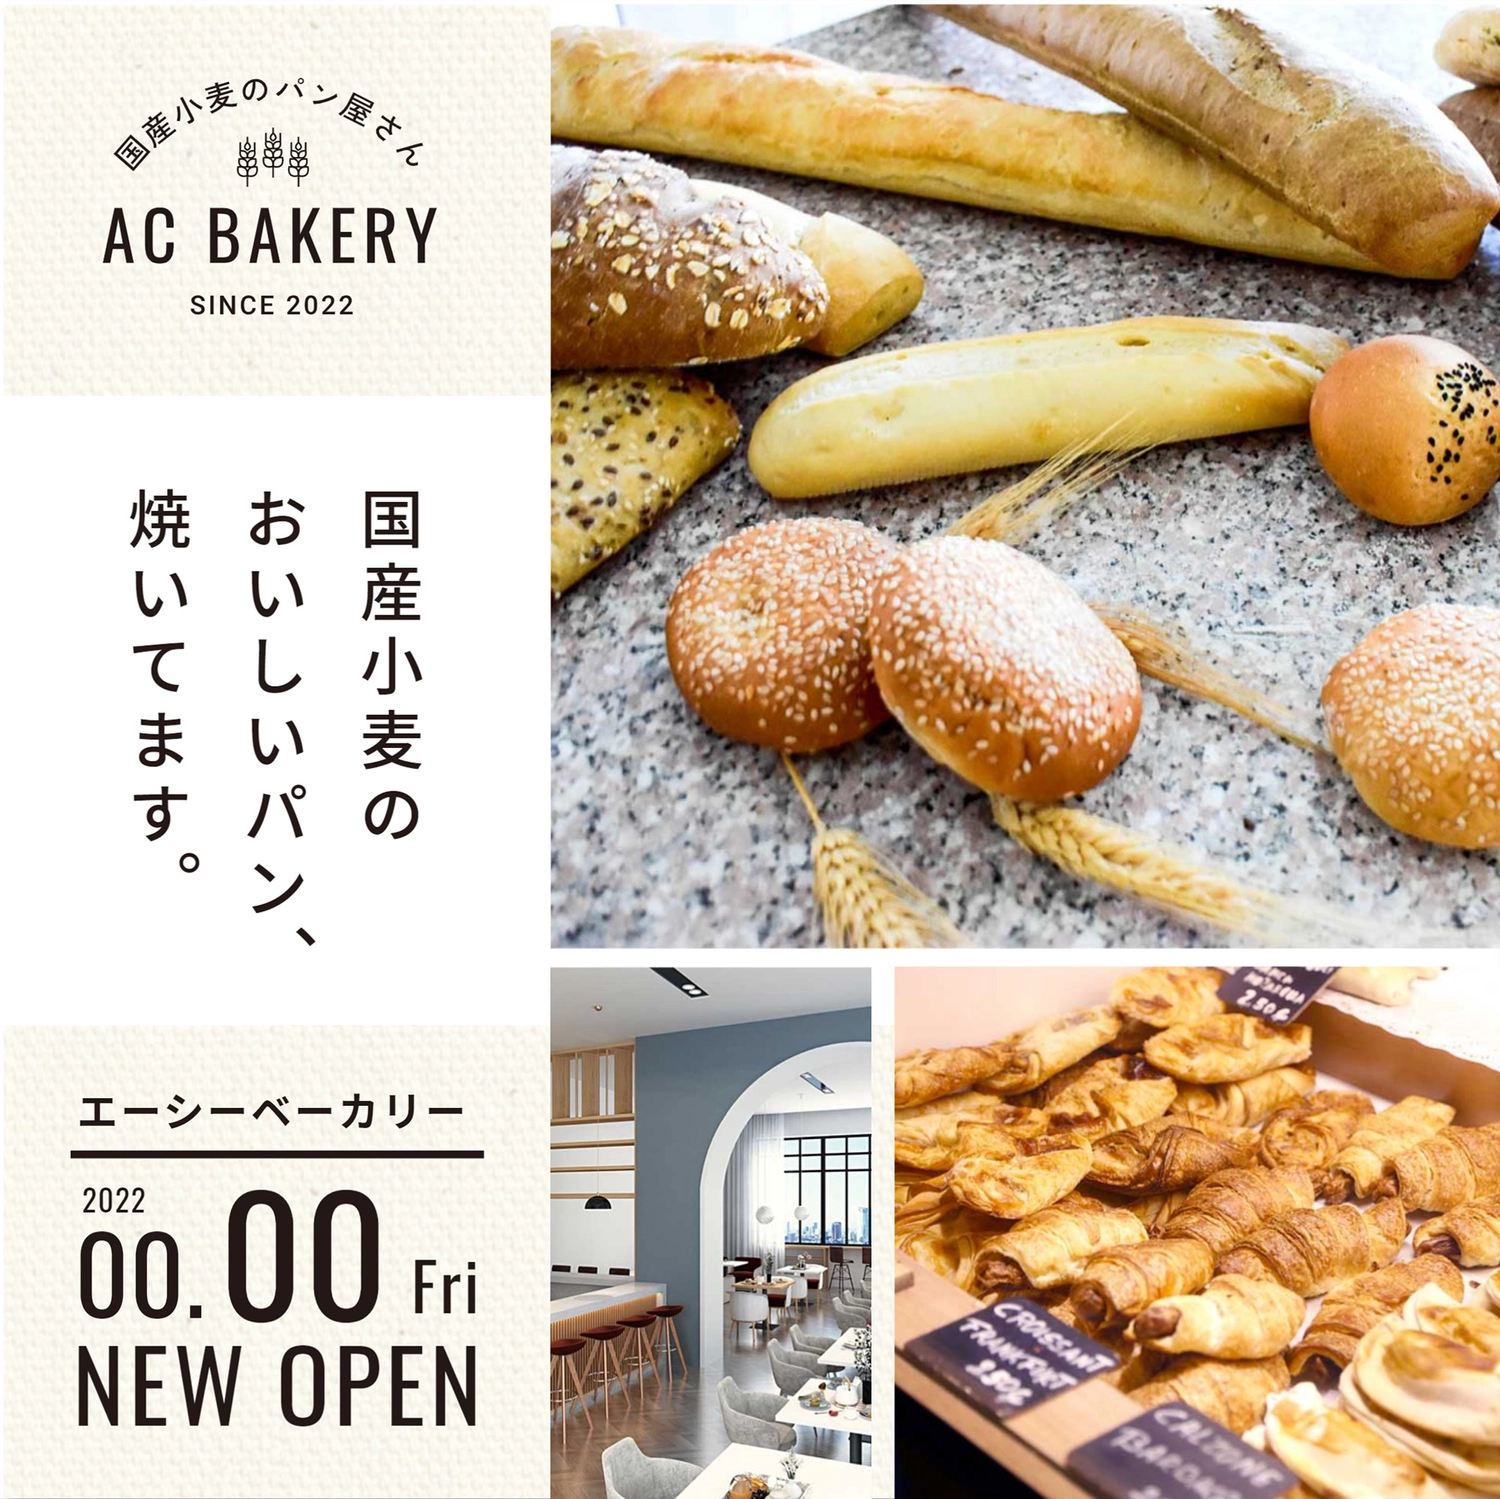 国産小麦ベーカリー　新規開店の案内, splendid, food, Freshly baked, Instagram Post template